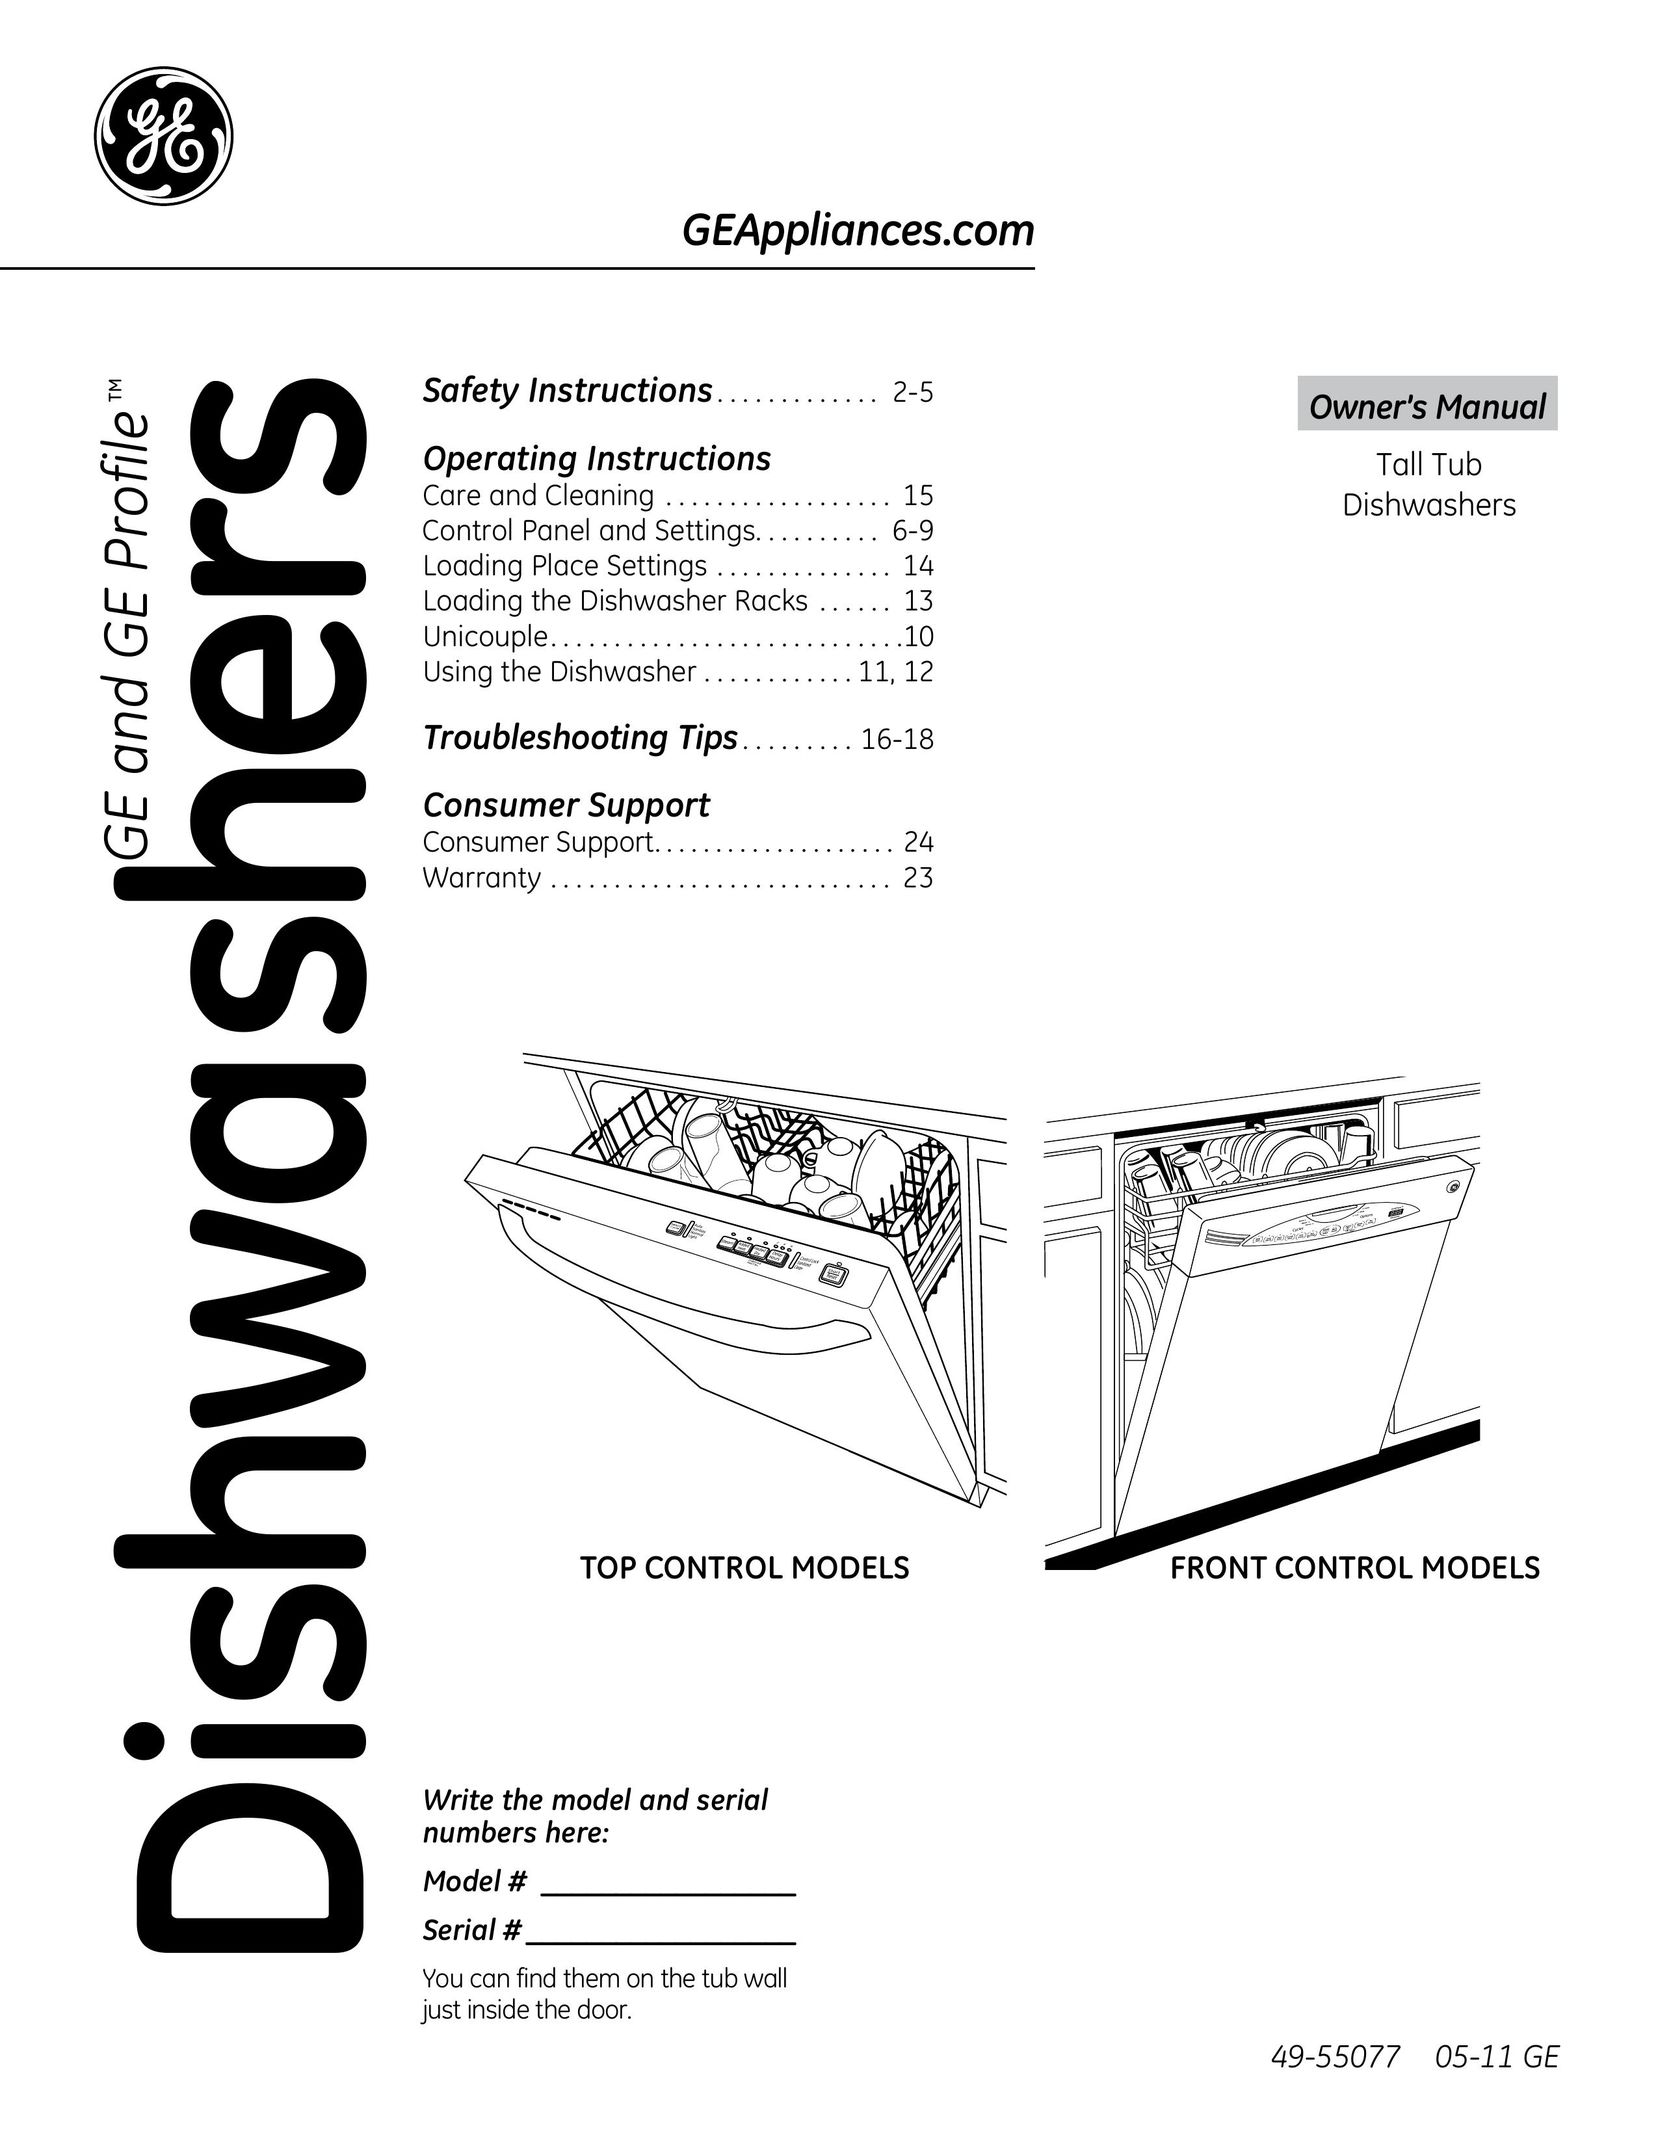 GE 49-55077 Dishwasher User Manual